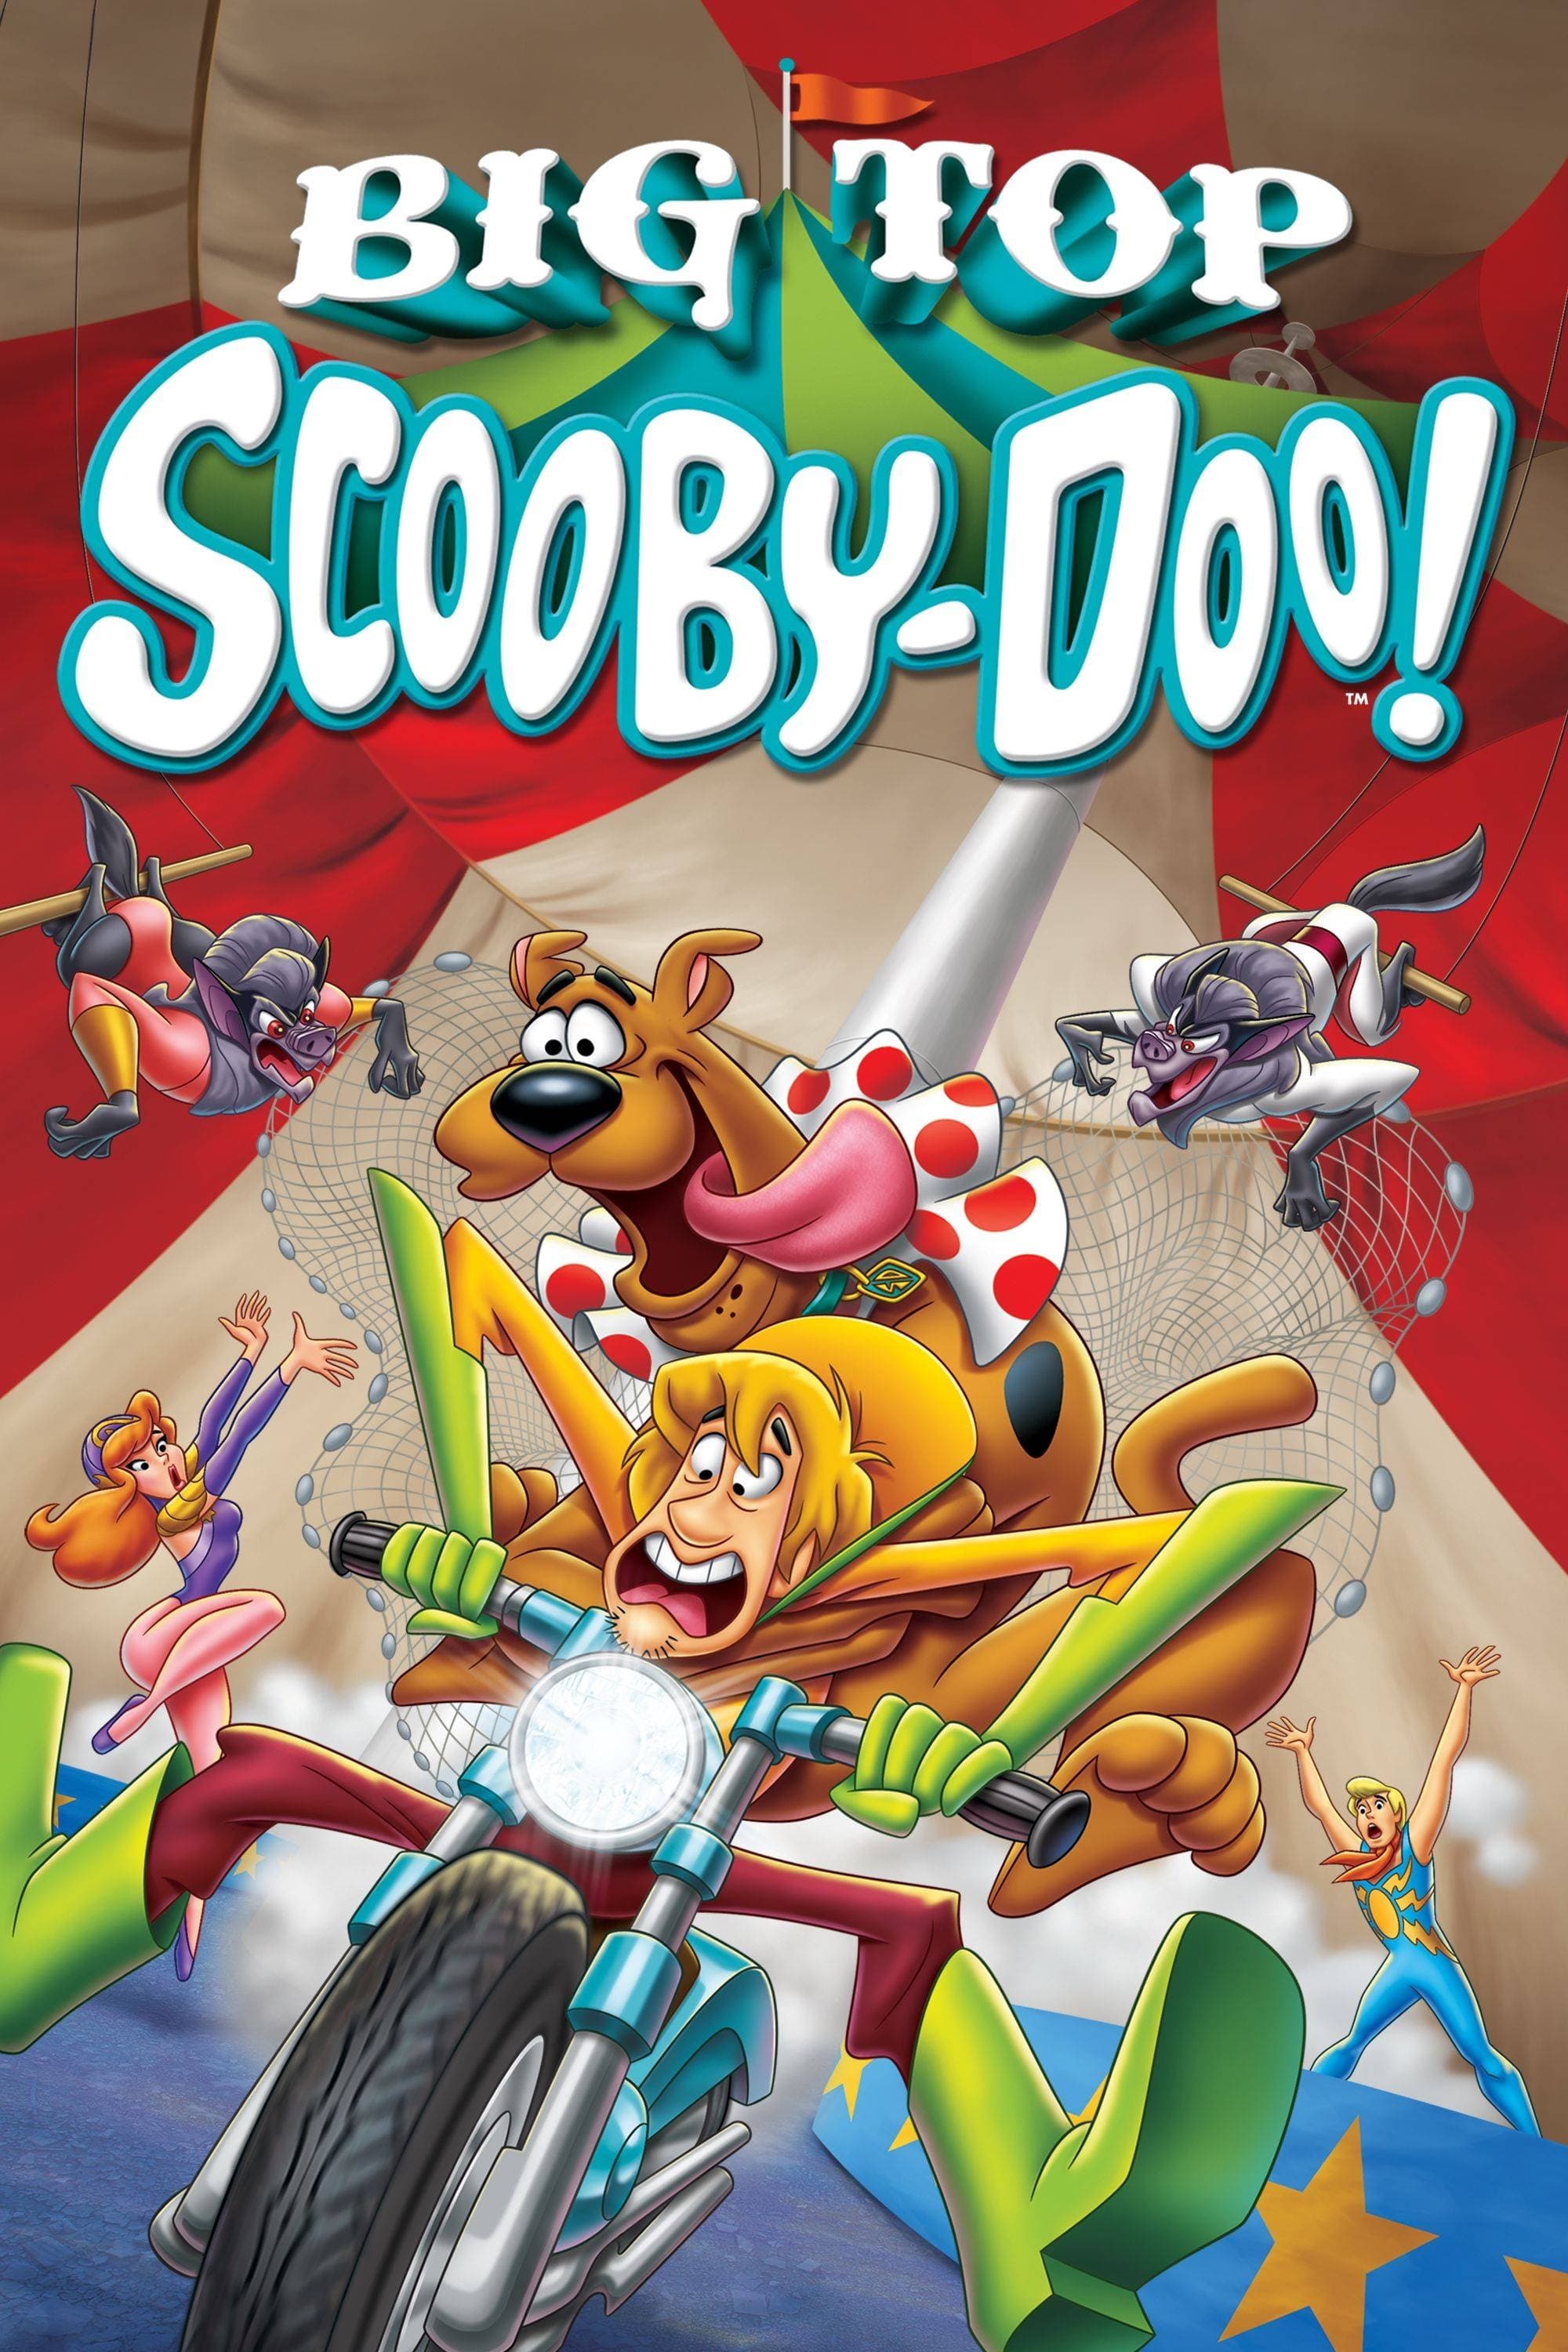 Scooby-Doo! Estrela do Circo